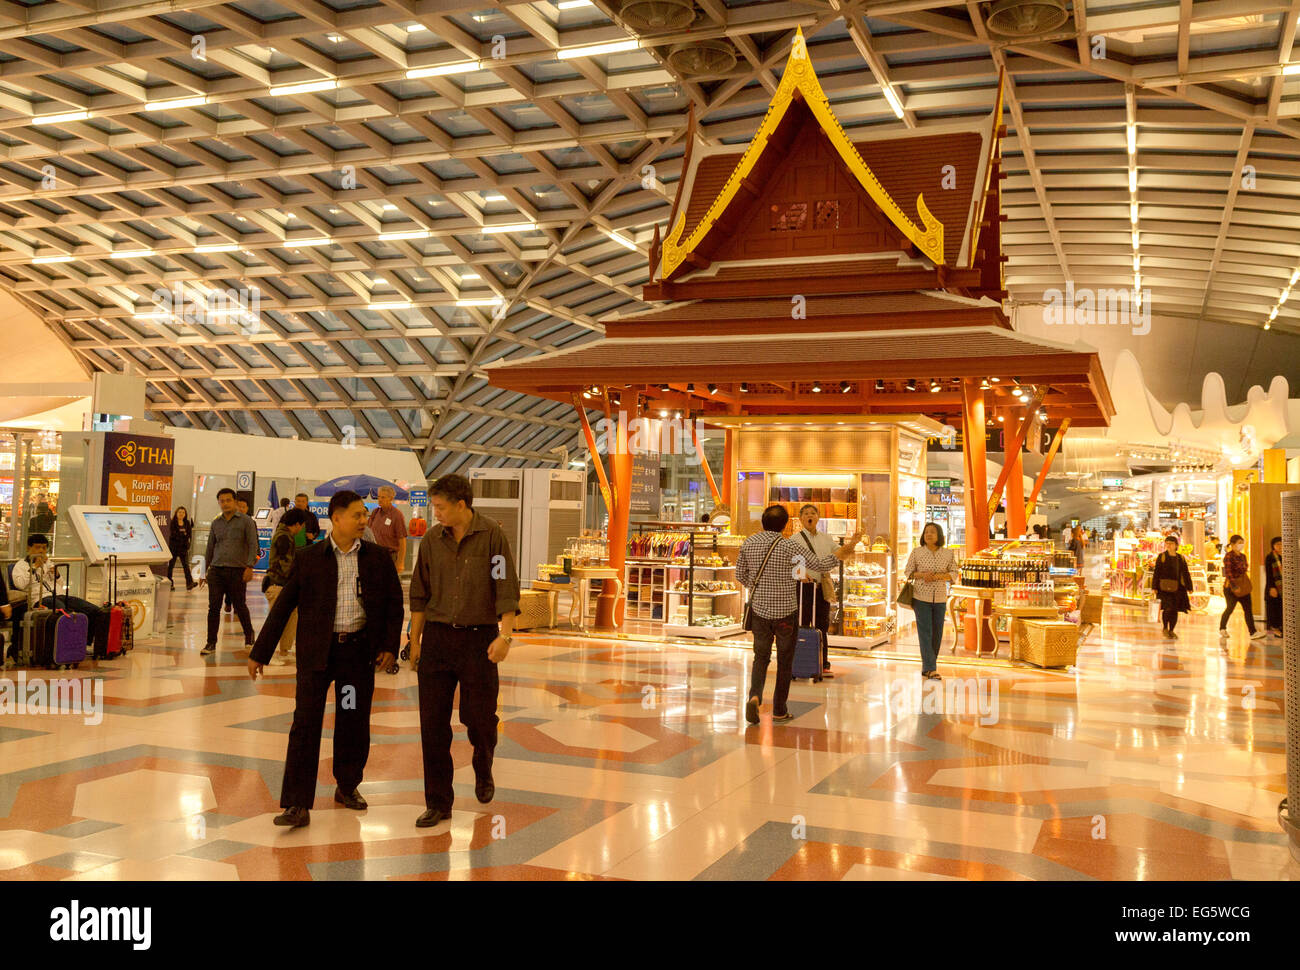 Scène qui se déroule dans l'aéroport de Suvarnabhumi, ou de l'Aéroport International de Bangkok, Bangkok, Thaïlande, Asie Banque D'Images